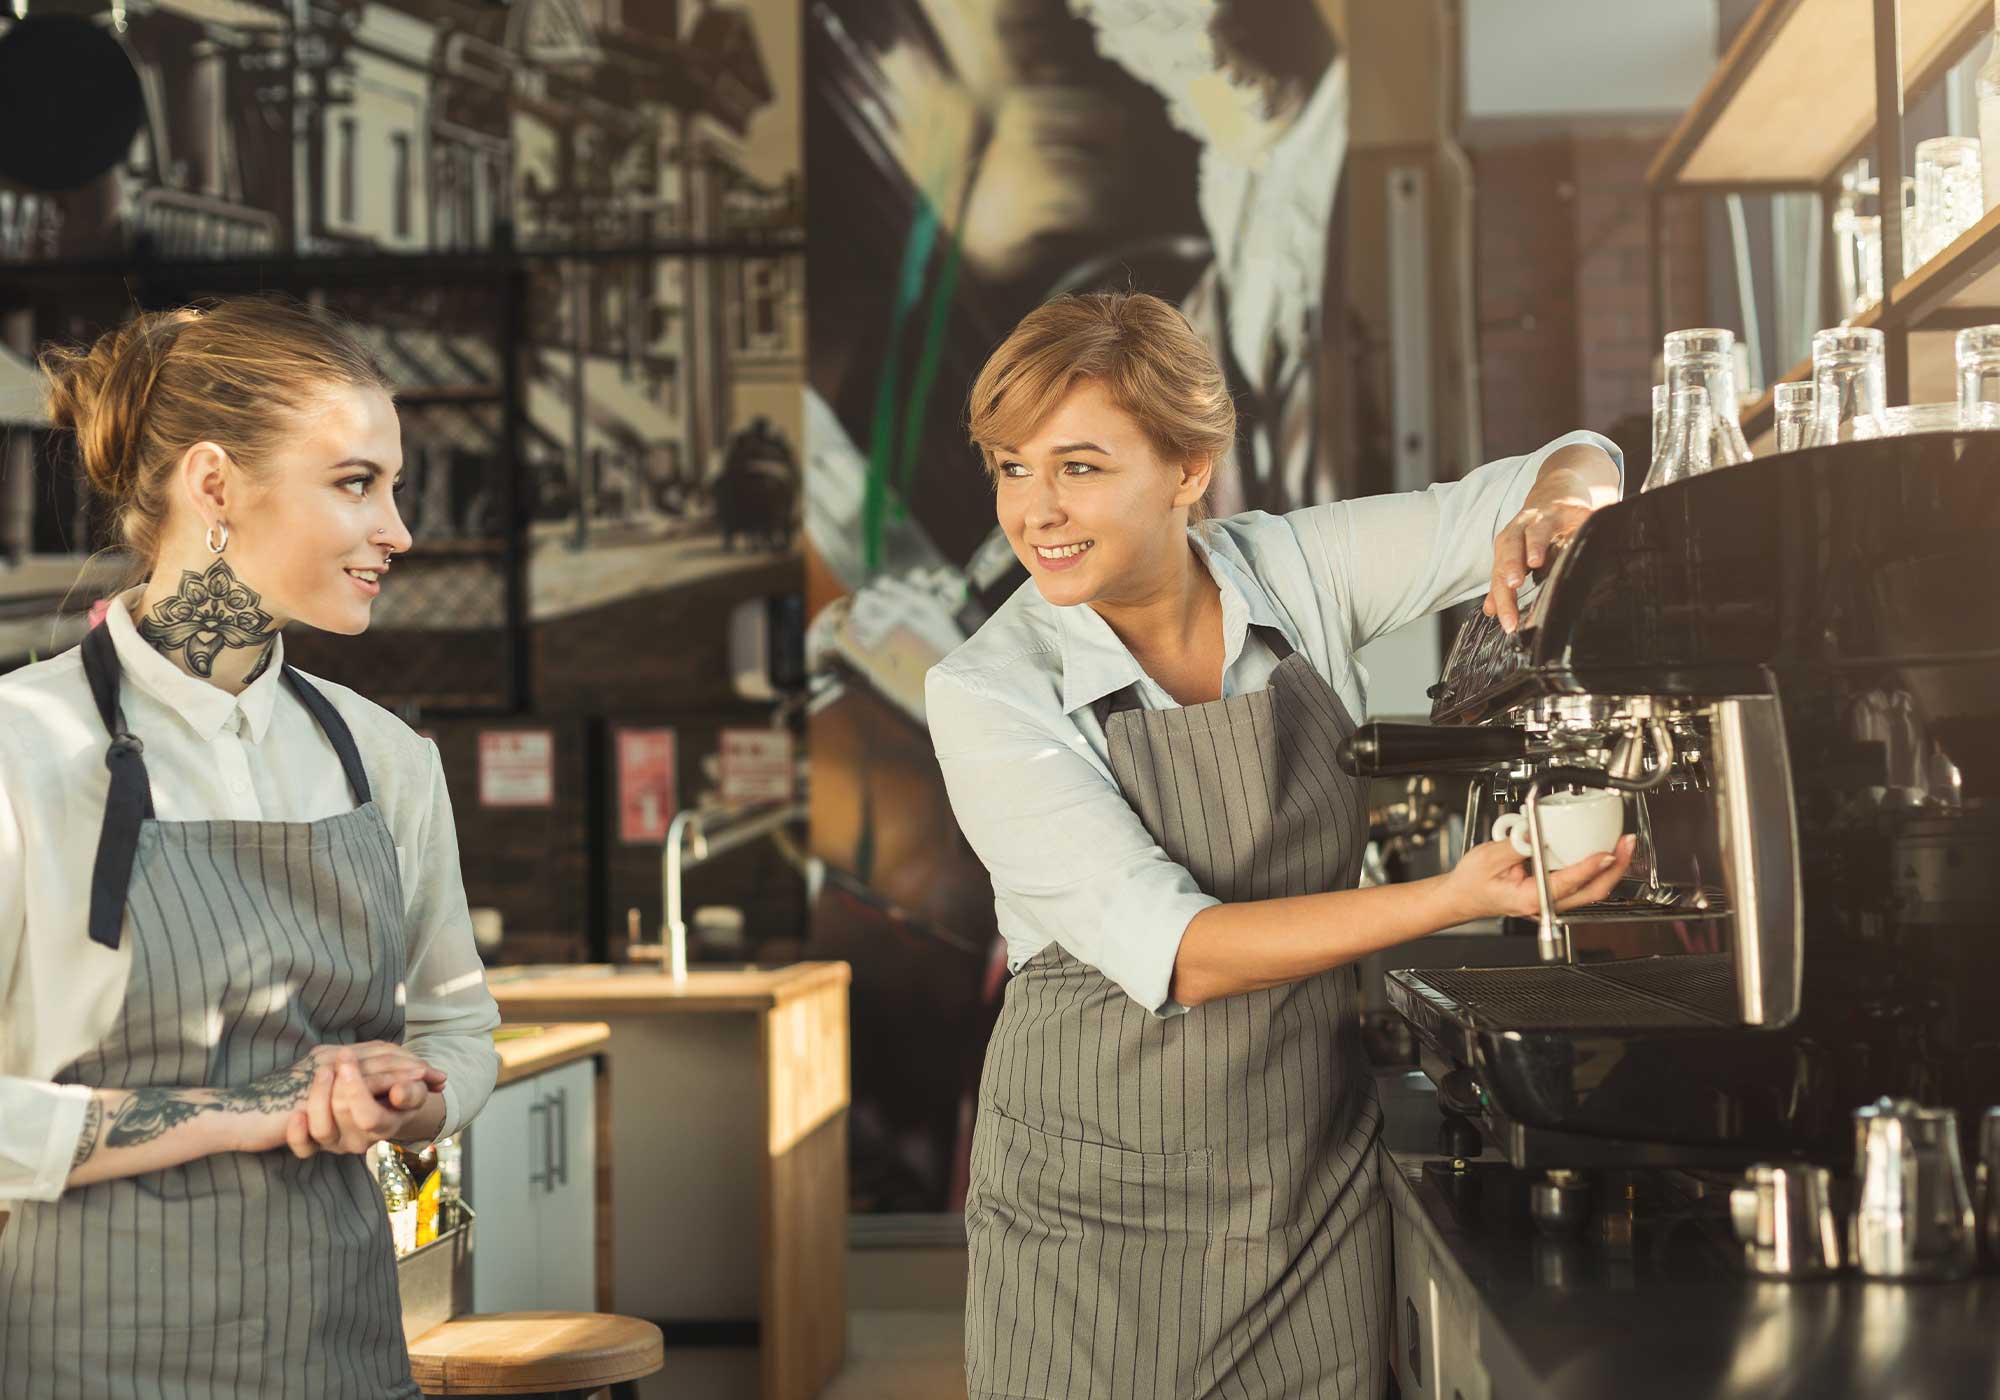 Bir kafe ortamında sohbet eden iki kadın barista yan yana yer alırken, sağ taraftaki espresso makinesi ile kahve demlemektedir.